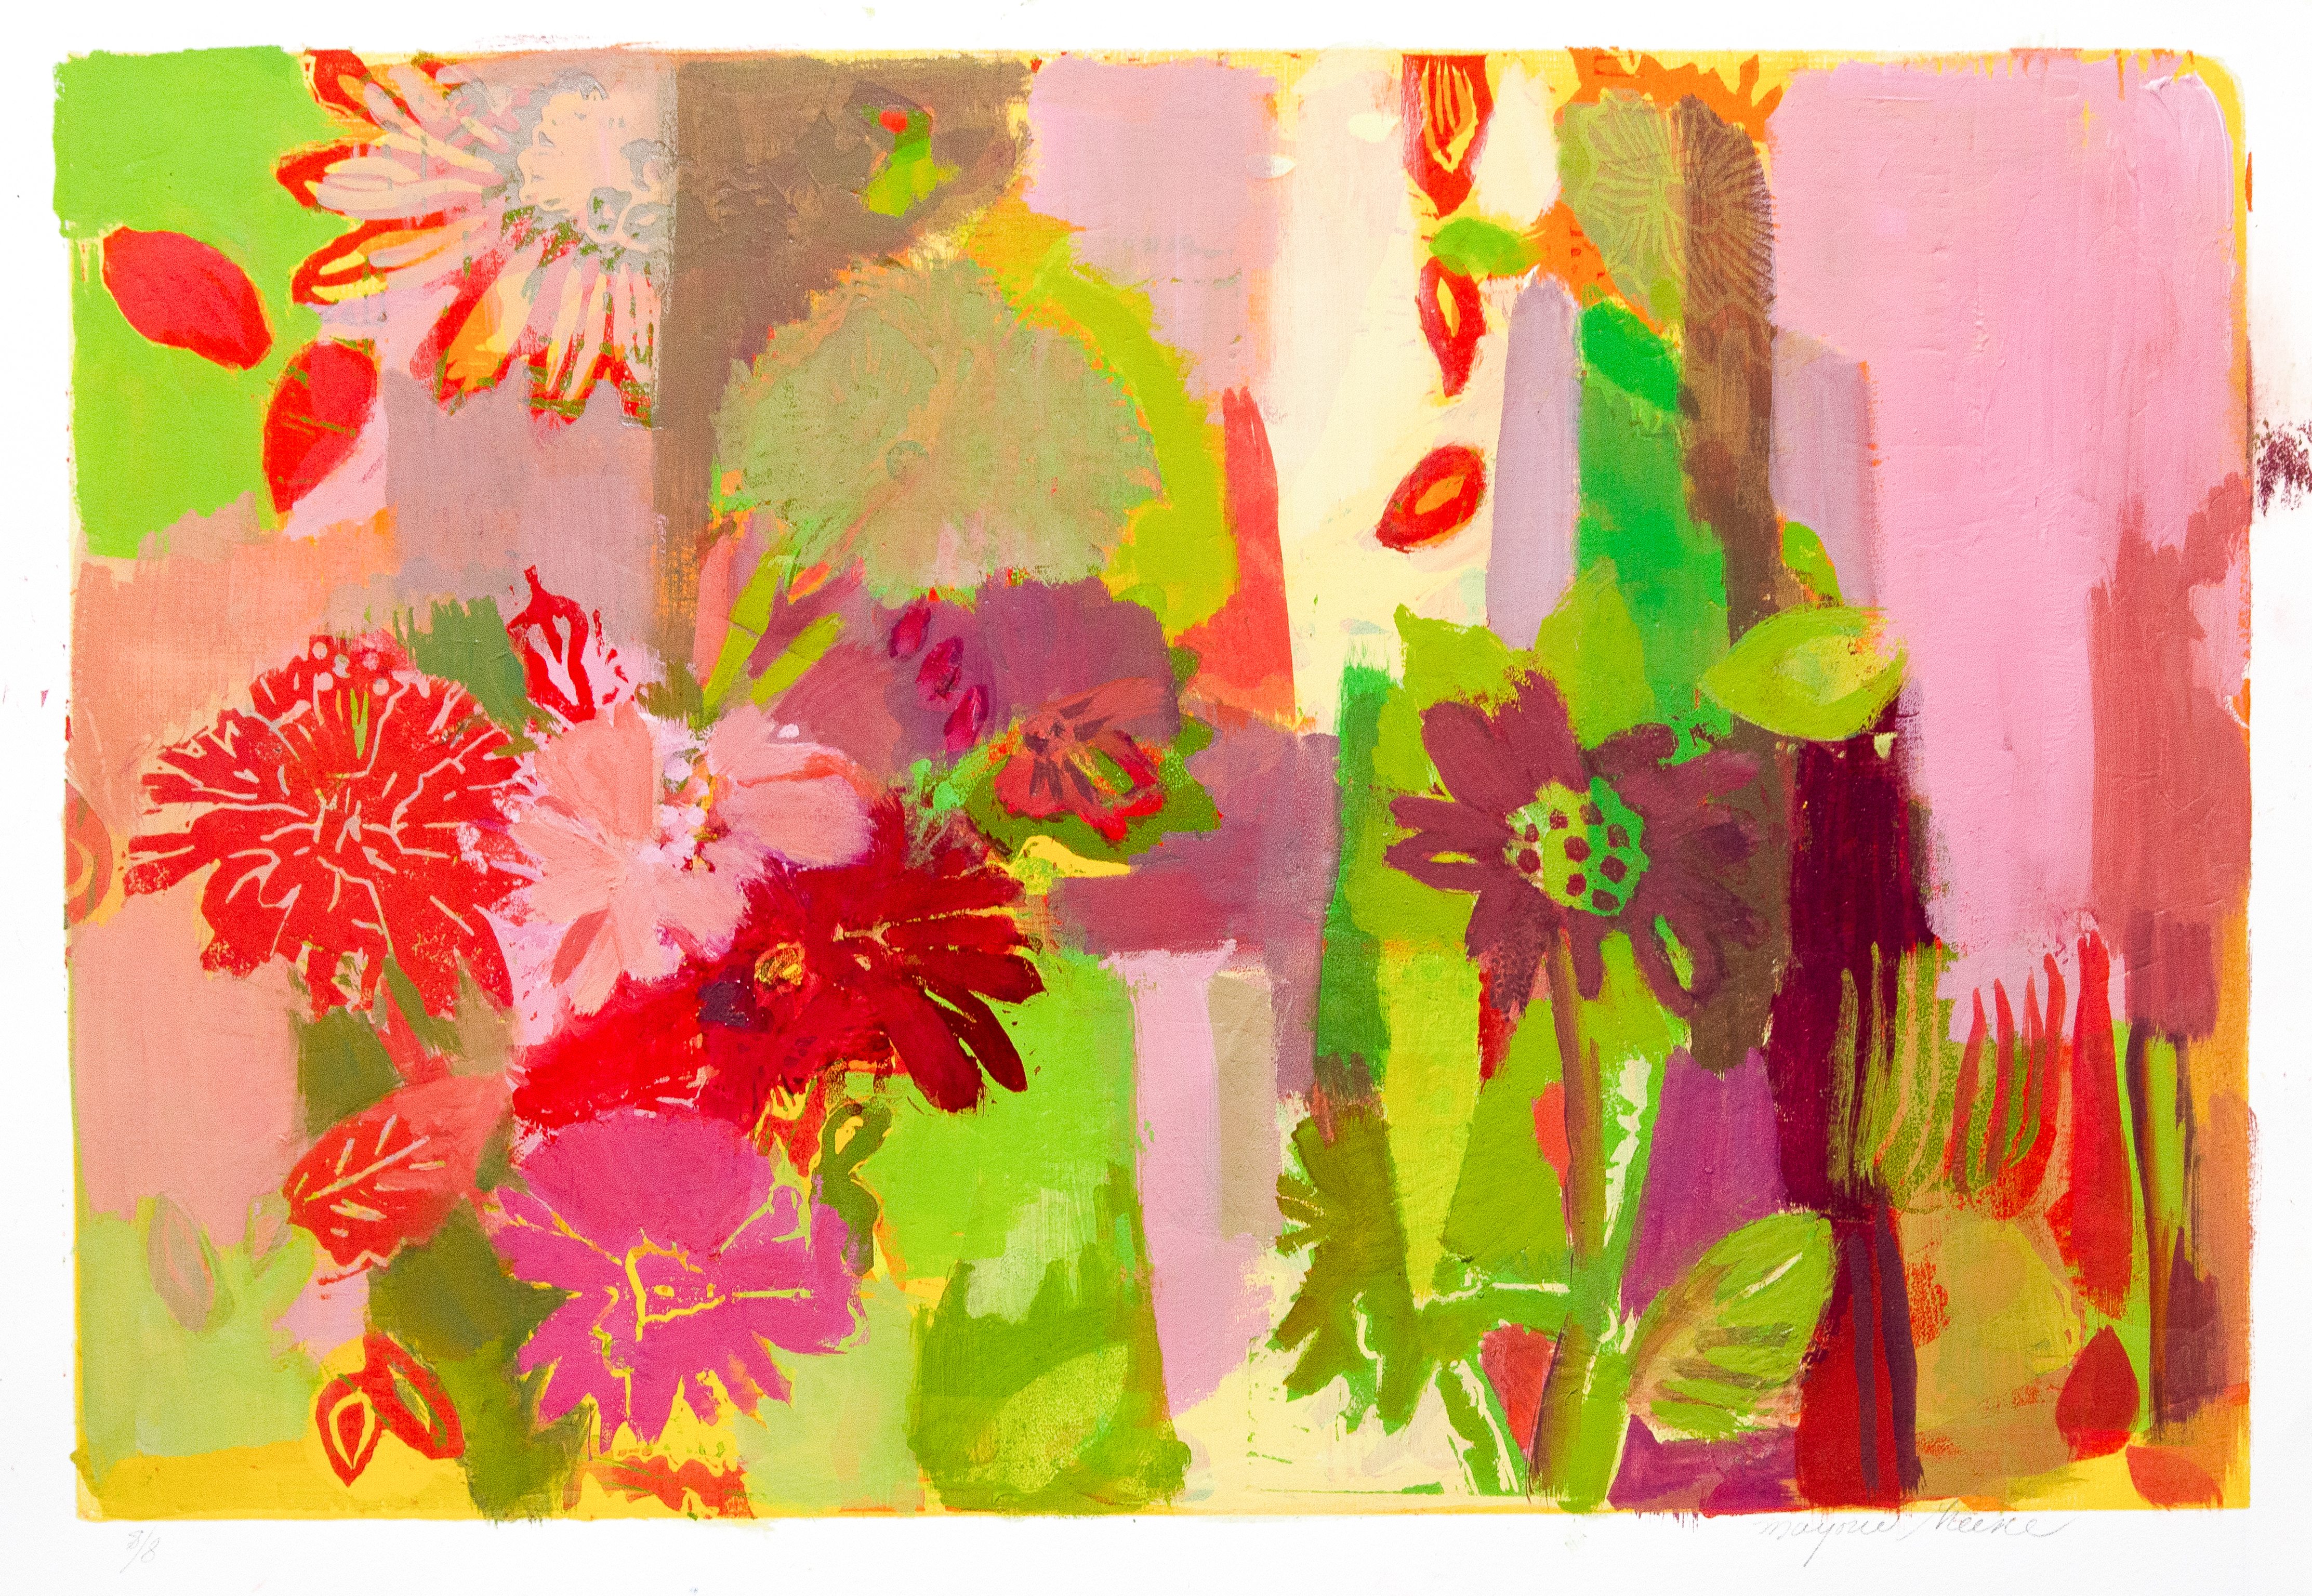 Marjorie Greene Graff: In a dream I was a flower